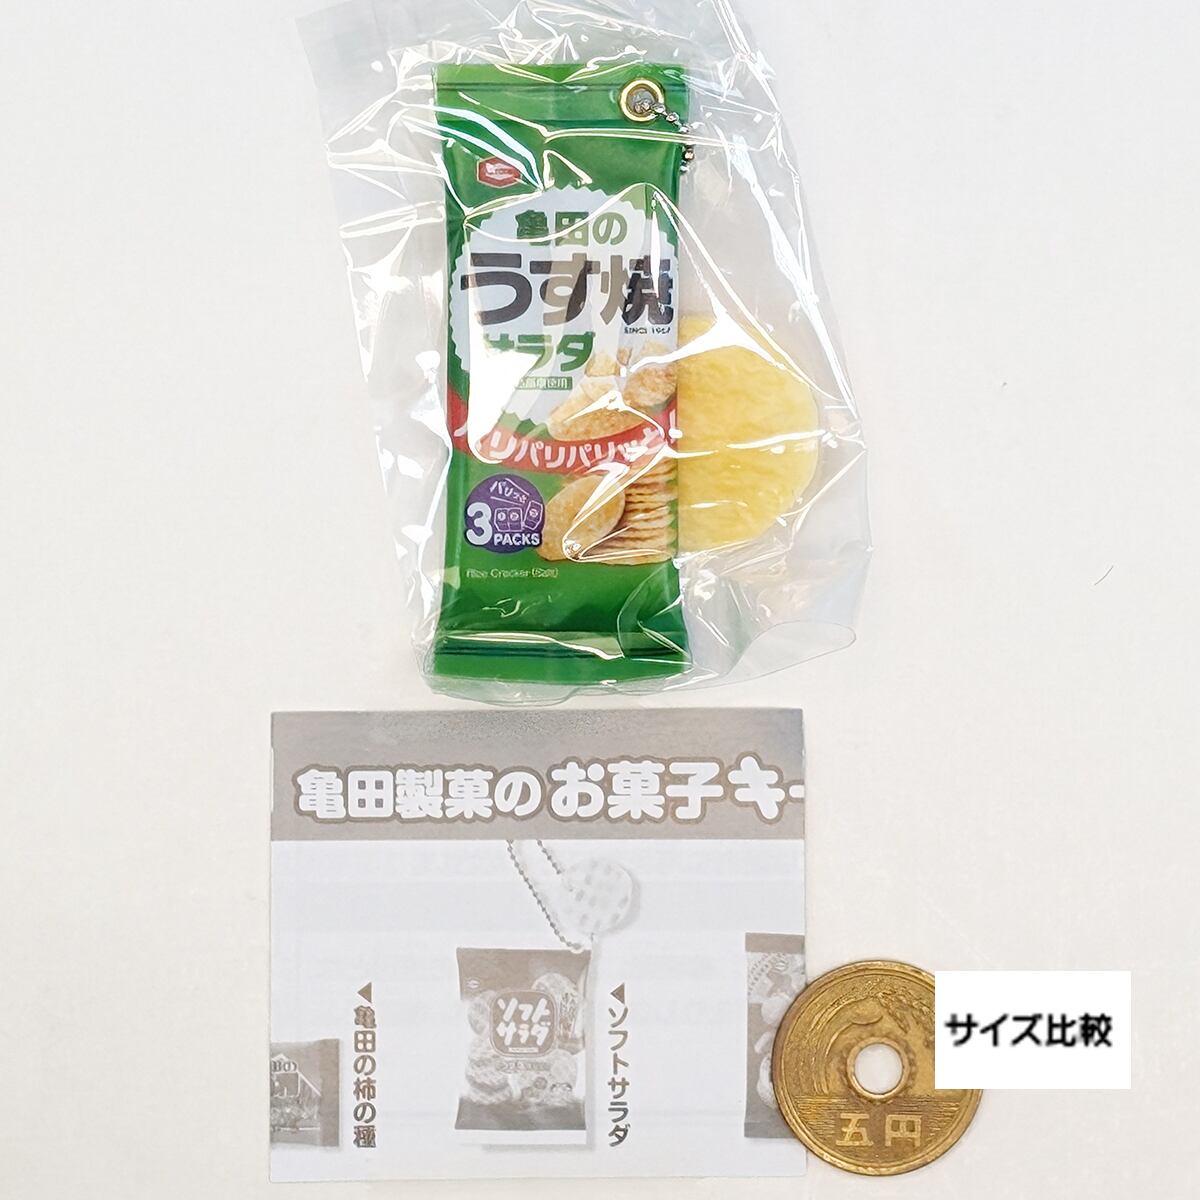 亀田のうす焼 サラダ 【亀田製菓のお菓子キーチェーン2 アイピーフォー